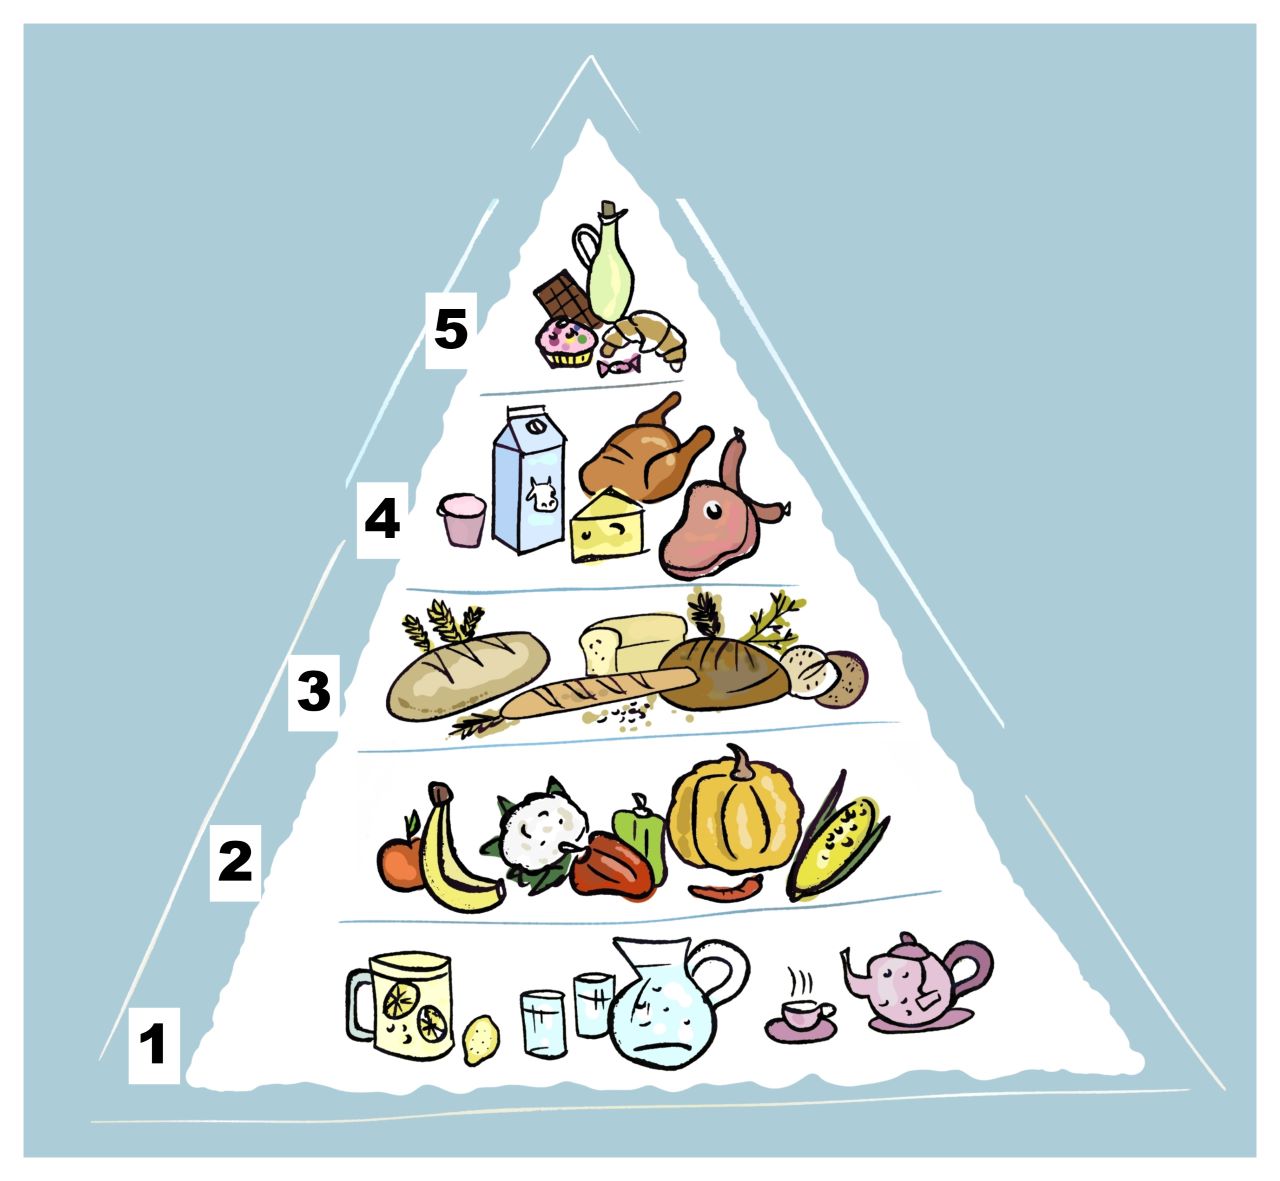 Ilustracija prikazuje prehrambenu piramidu. Najvažnija je voda pod brojem 1, zatim voće i povrće pod brojem 2, žitarice pod brojem 3, mliječni proizvodi i meso pod brojem 4 i zadnji su slatkiši pod brojem 5.